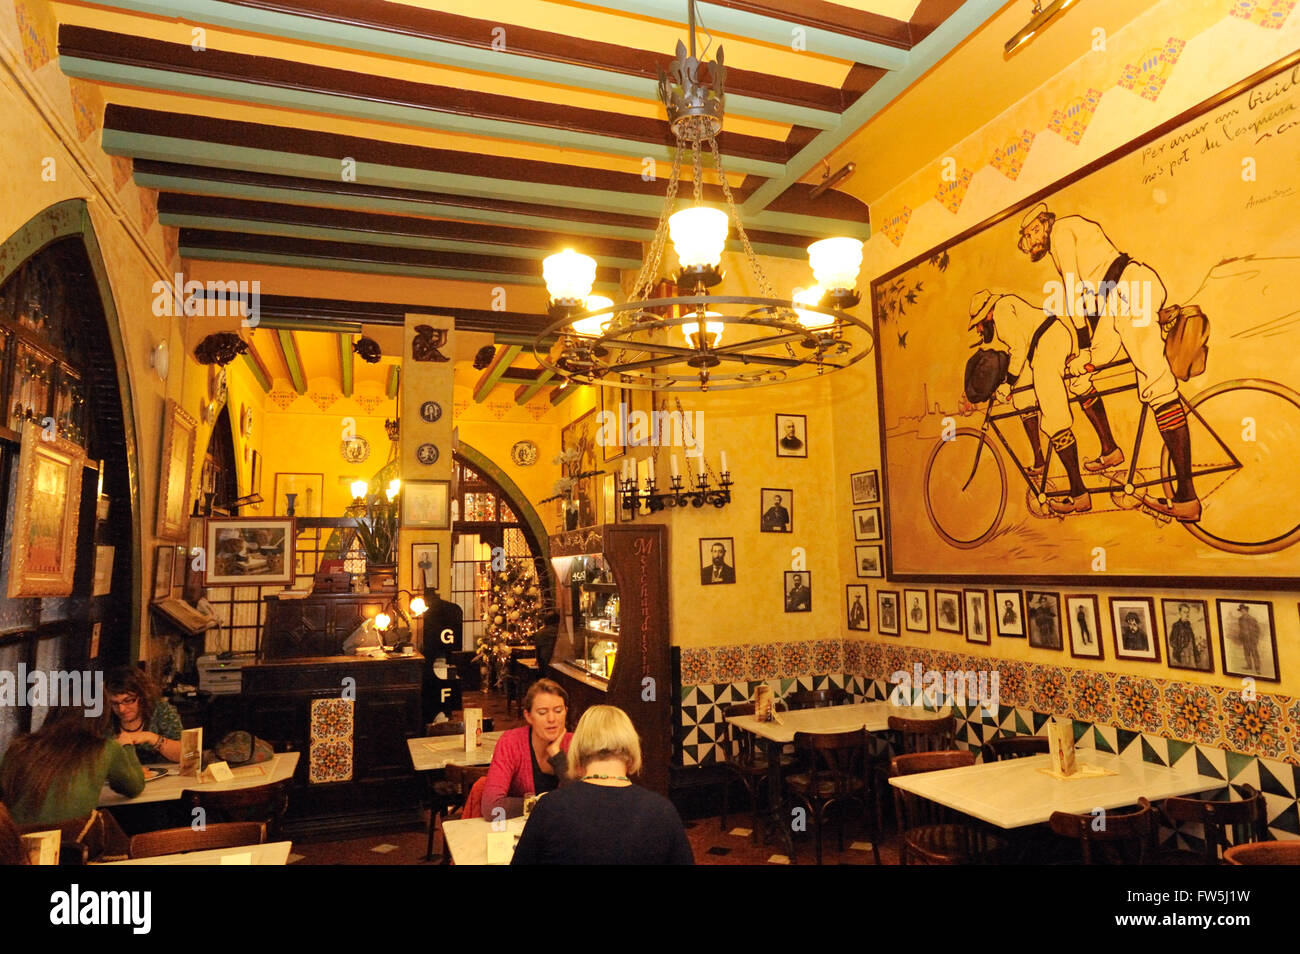 Restaurante Quatre Gats, gatos, en el antiguo de Barcelona, Ciutat Vella - barrio gótico; punto de reunión del pintor Pablo Picasso y catalanes; interior con un ciclo de